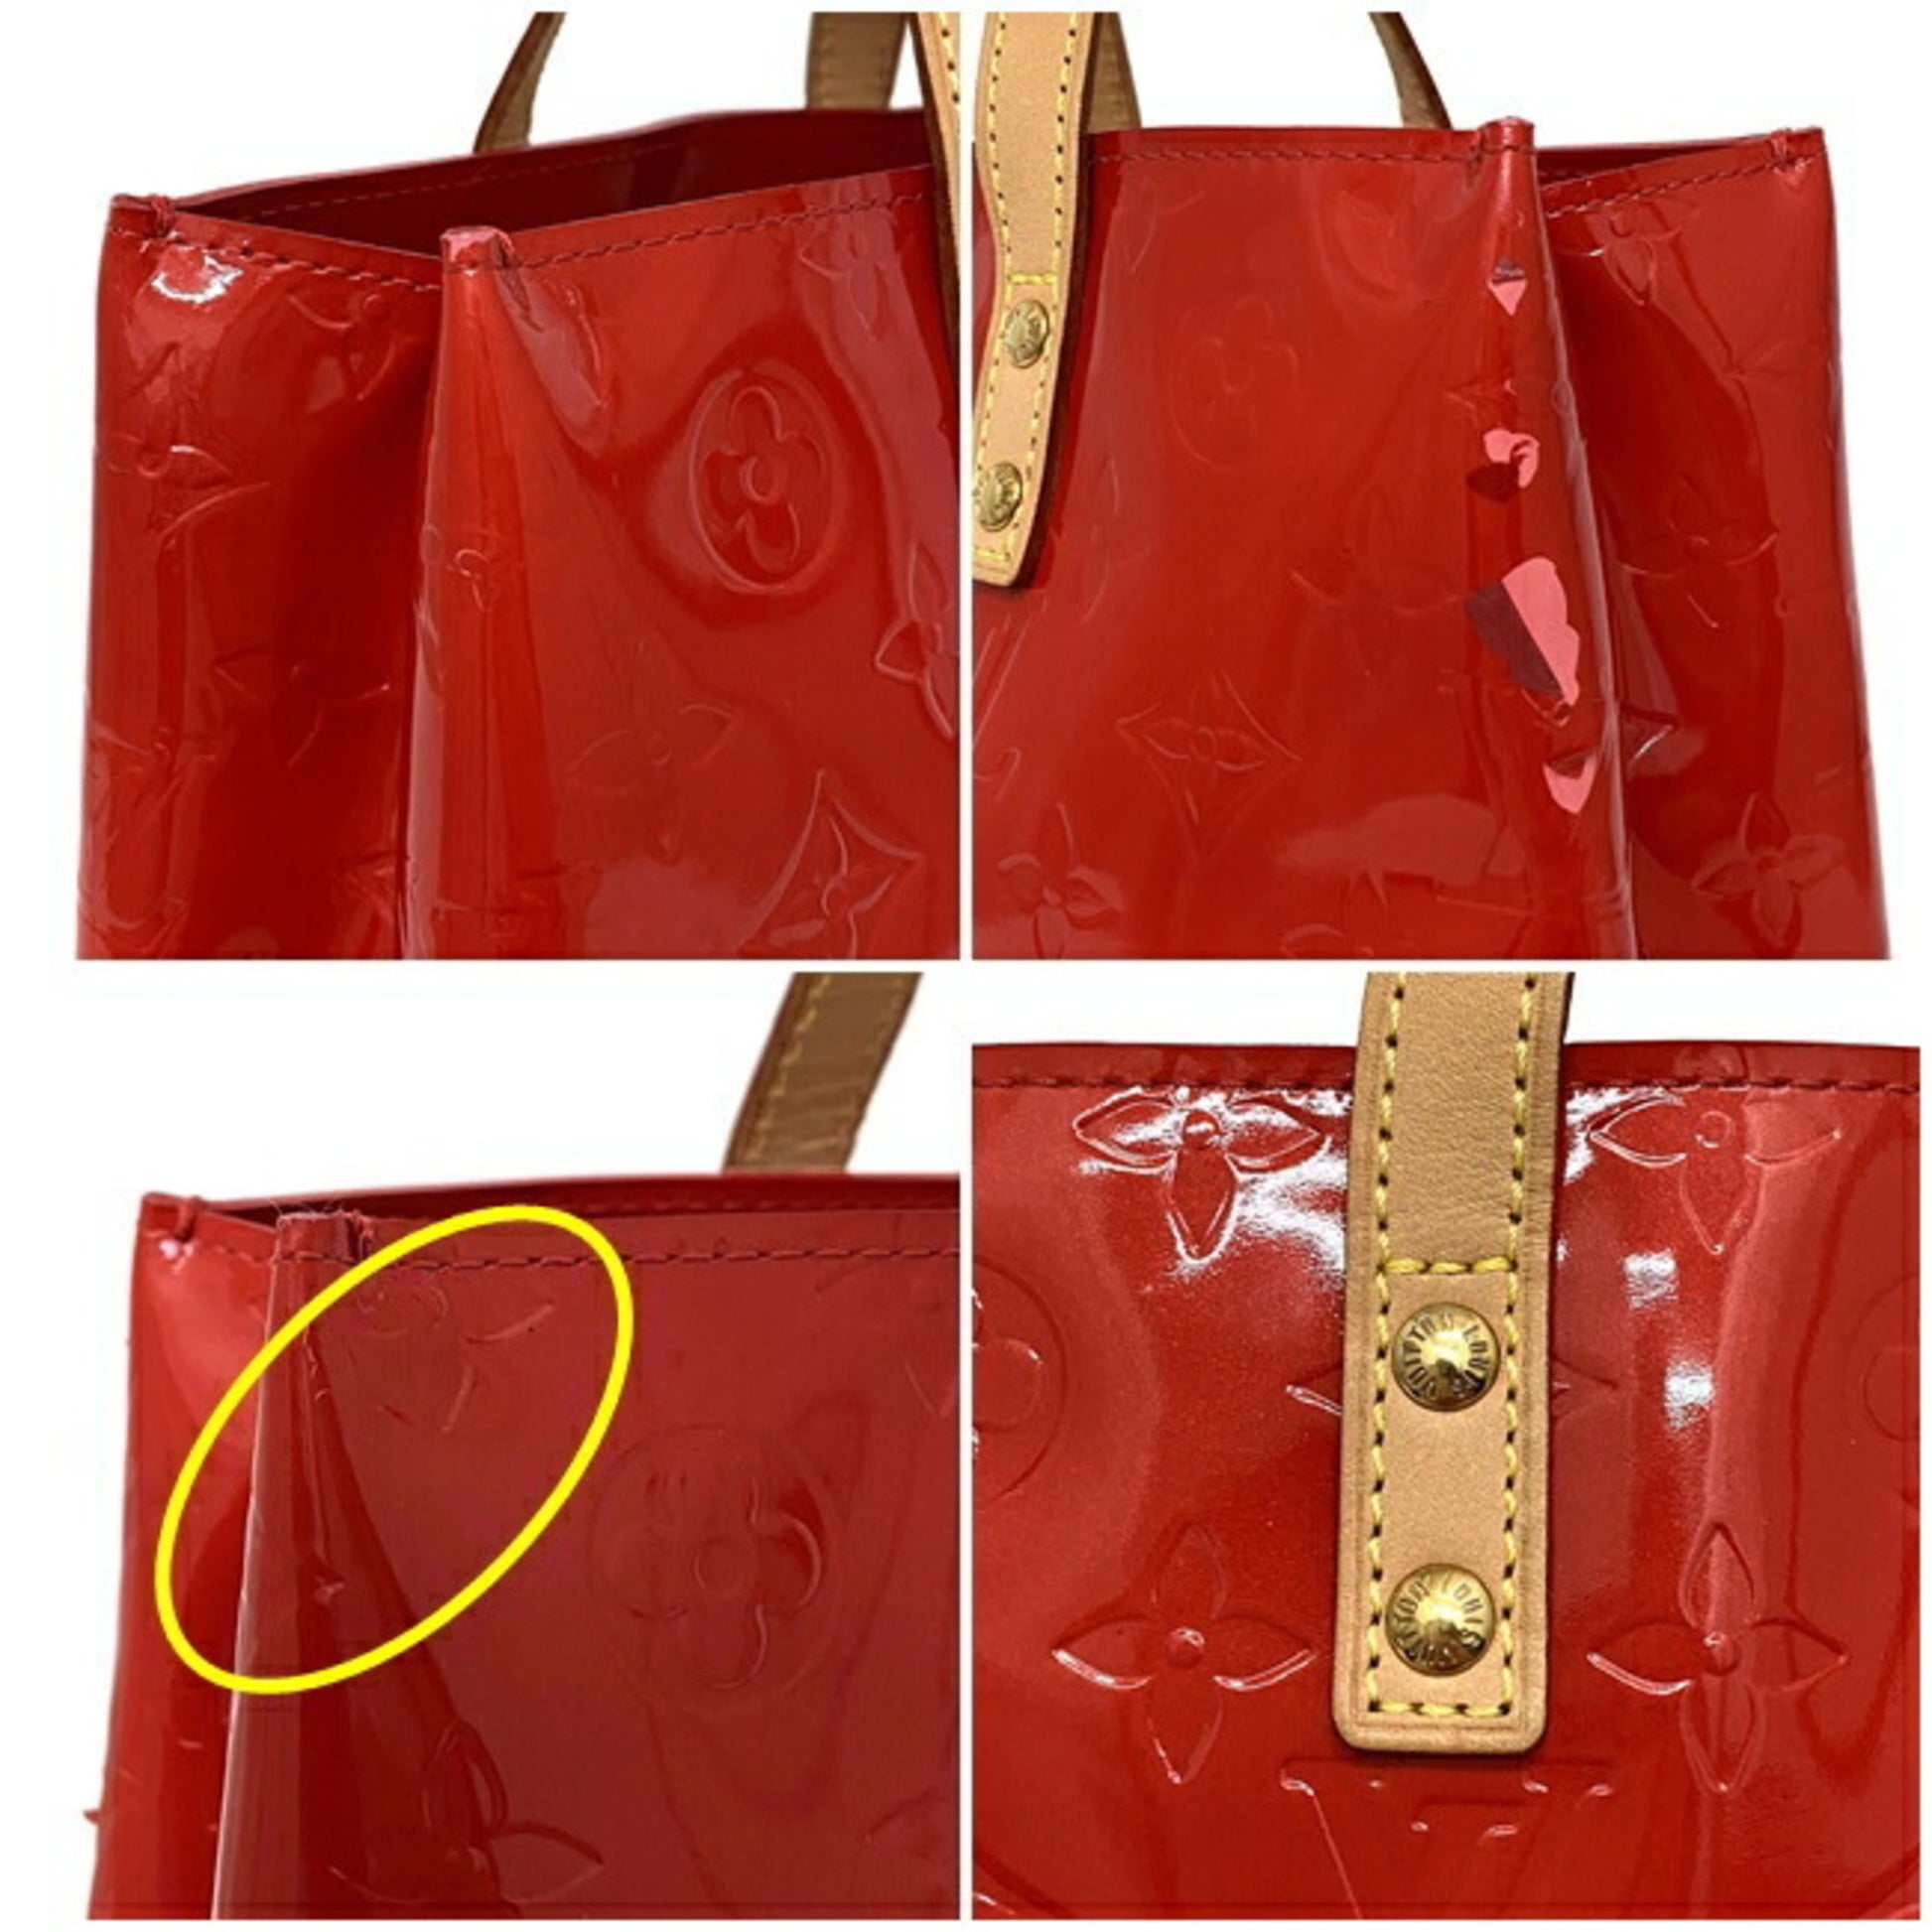 Louis Vuitton 2002 Vernis Reade PM handbag, 780cad free shipping